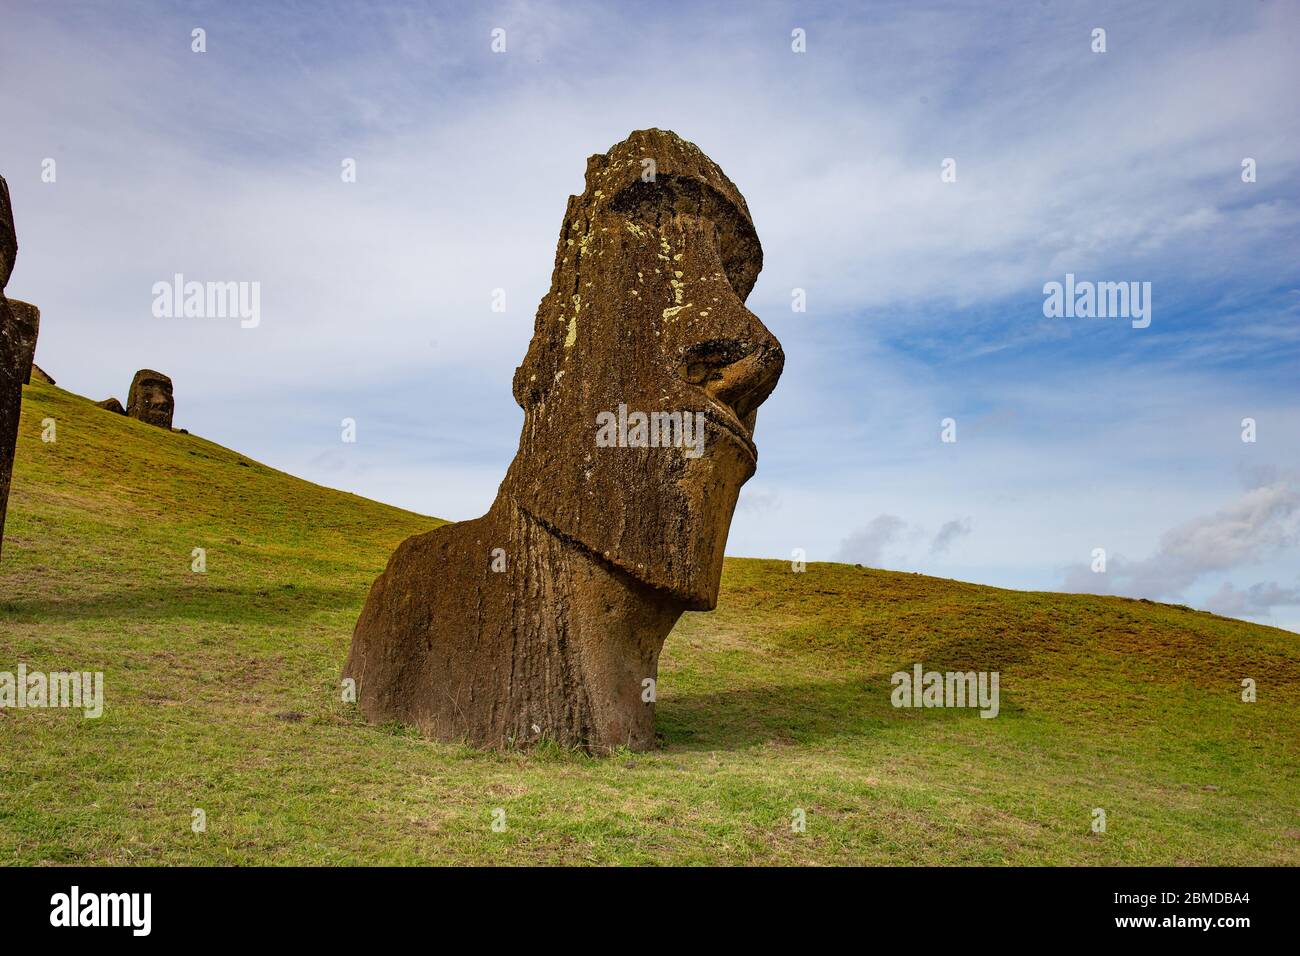 Stone statues Moai on Easter Island Rapa Nui. Stock Photo